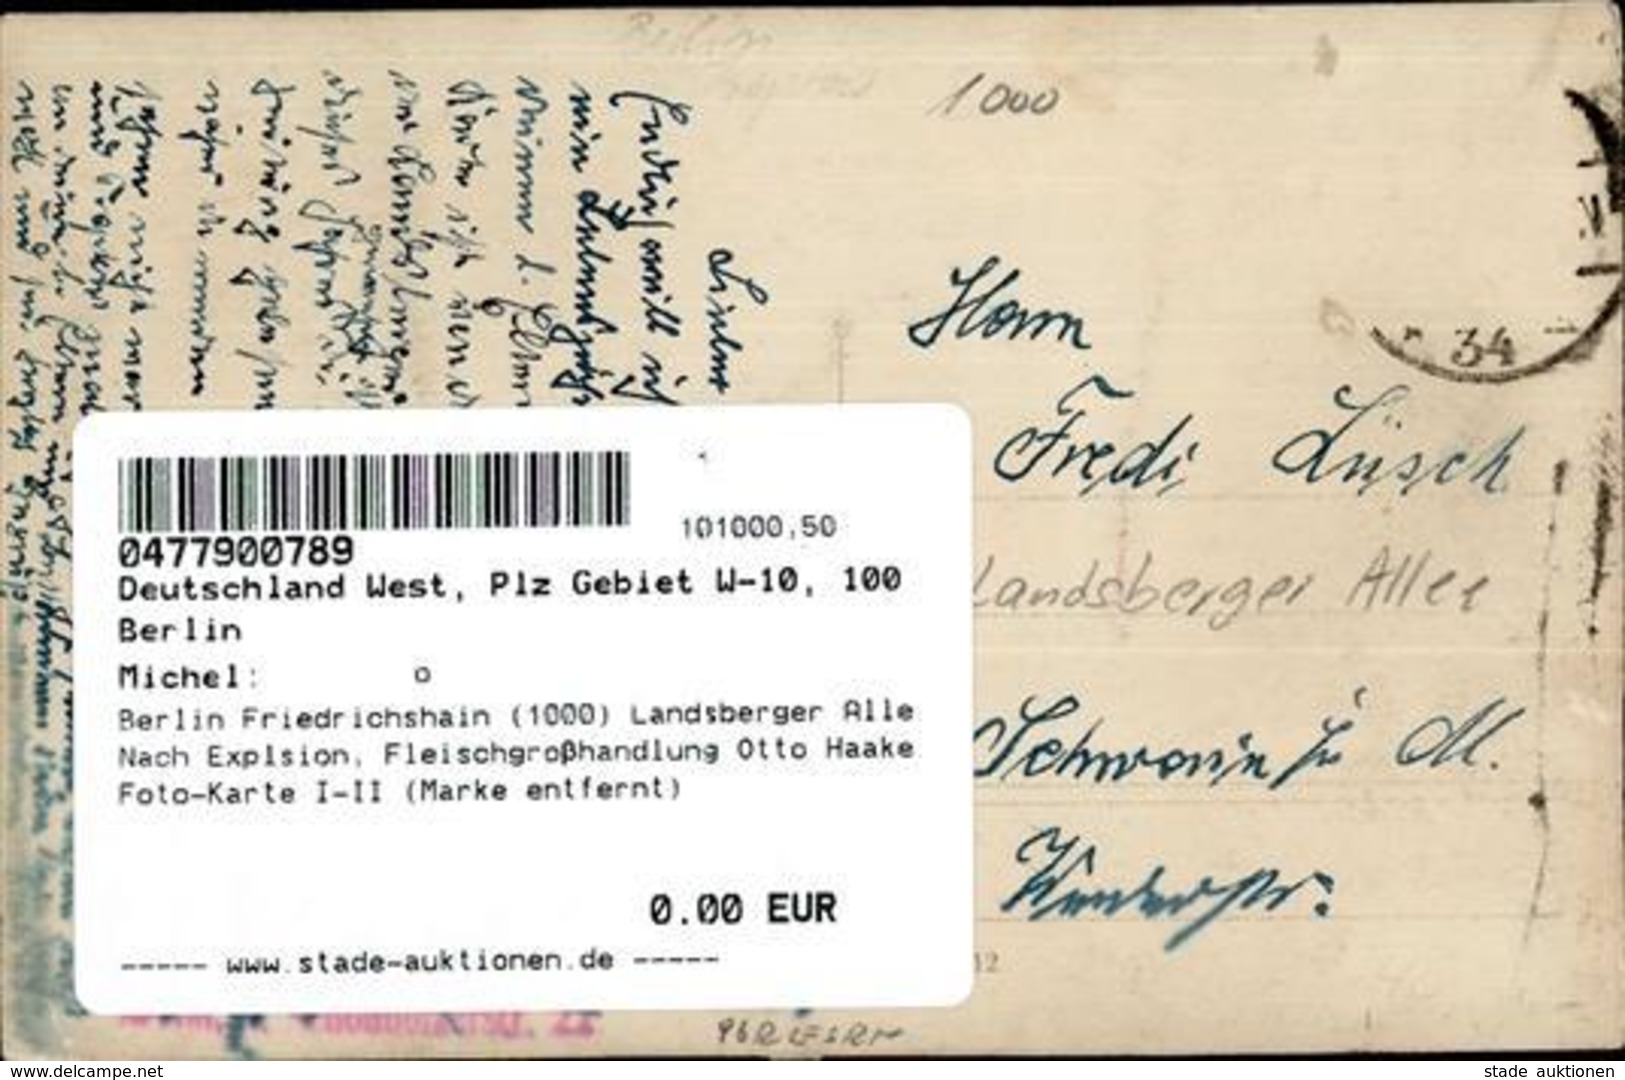 Berlin Friedrichshain (1000) Landsberger Alle Nach Explsion, Fleischgroßhandlung Otto Haake Foto-Karte I-II (Marke Entfe - Cameroun